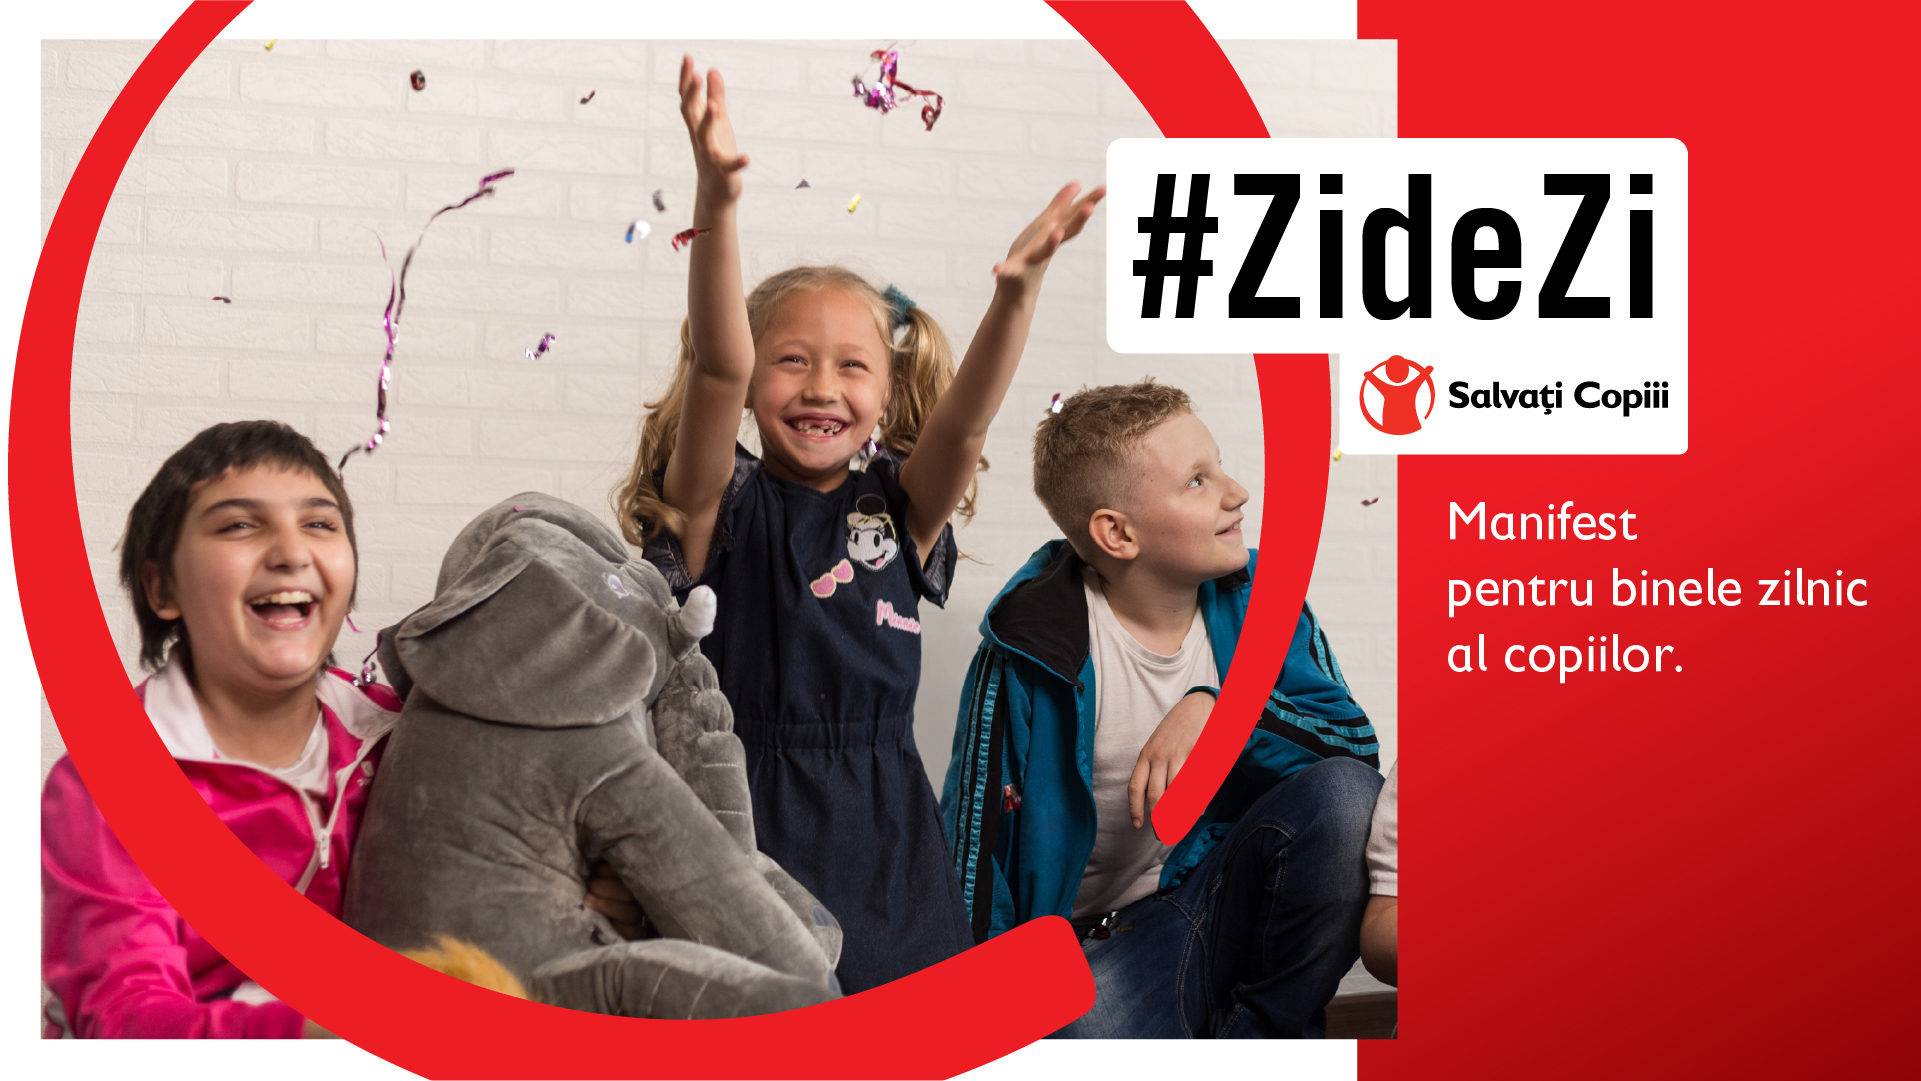 Salvați Copiii România lansează Campania #ZideZi Manifest pentru binele zilnic al copiilor (1)